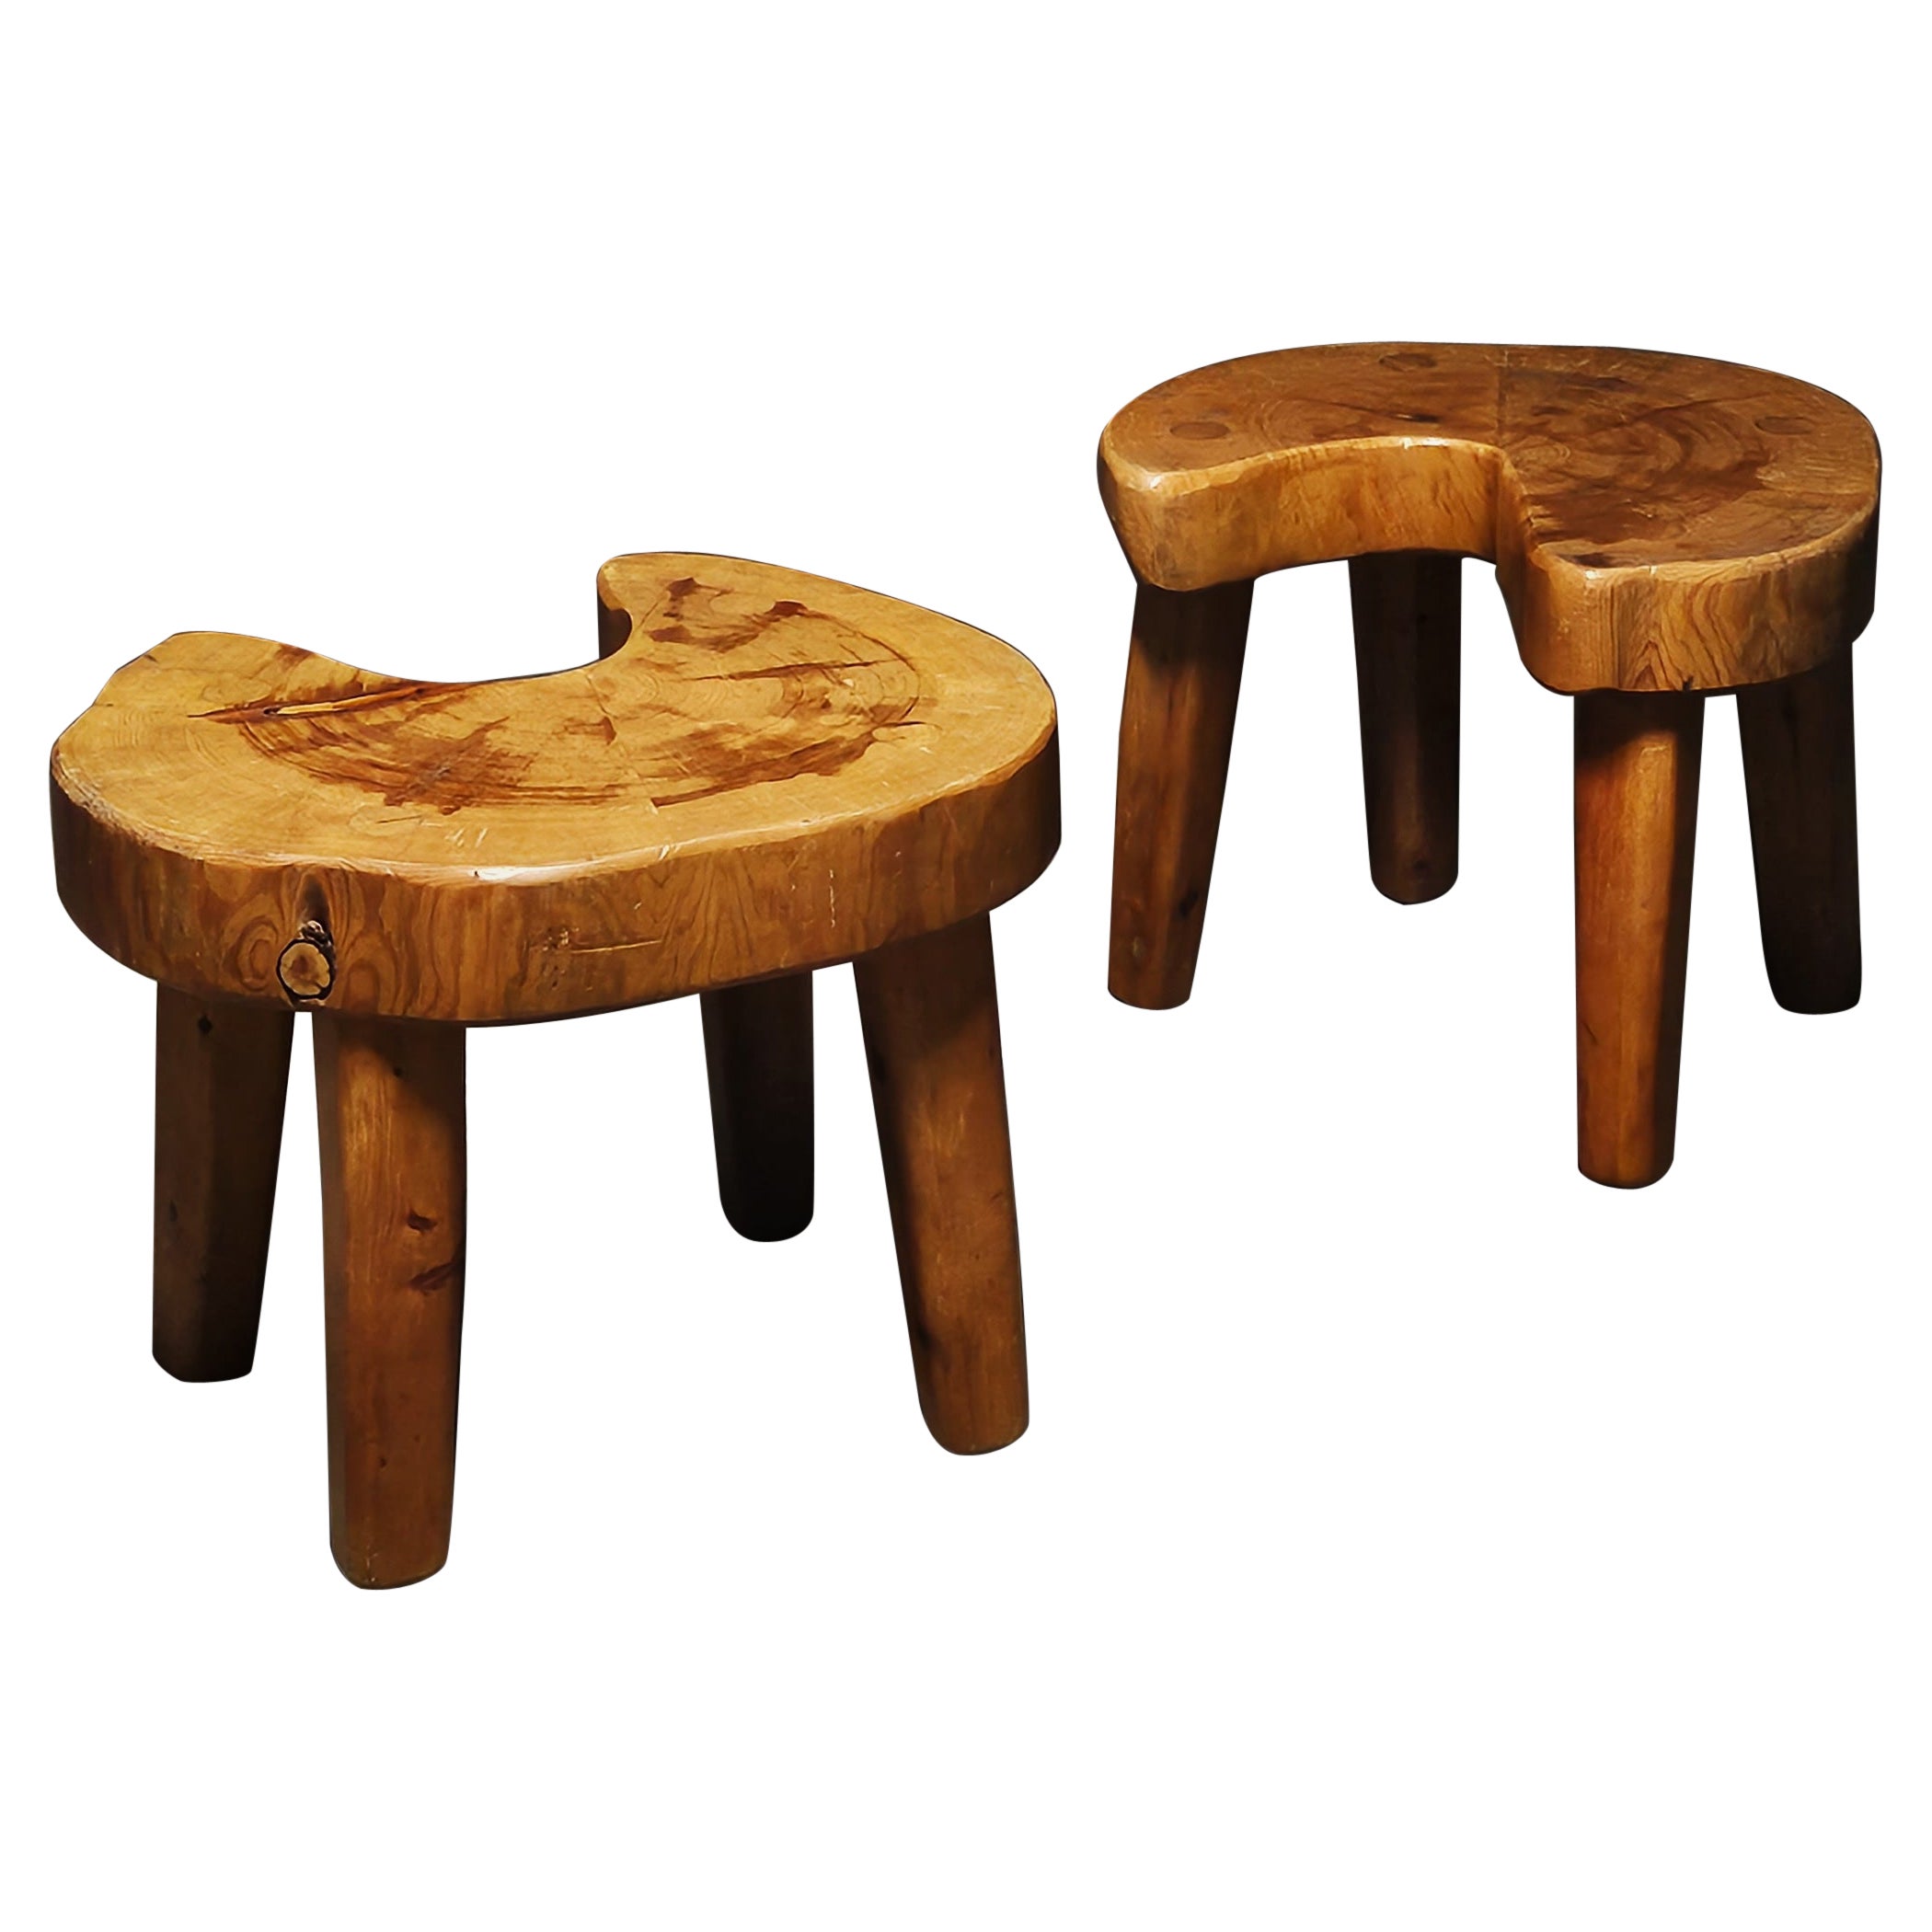 Unique primitive Swedish pine stools